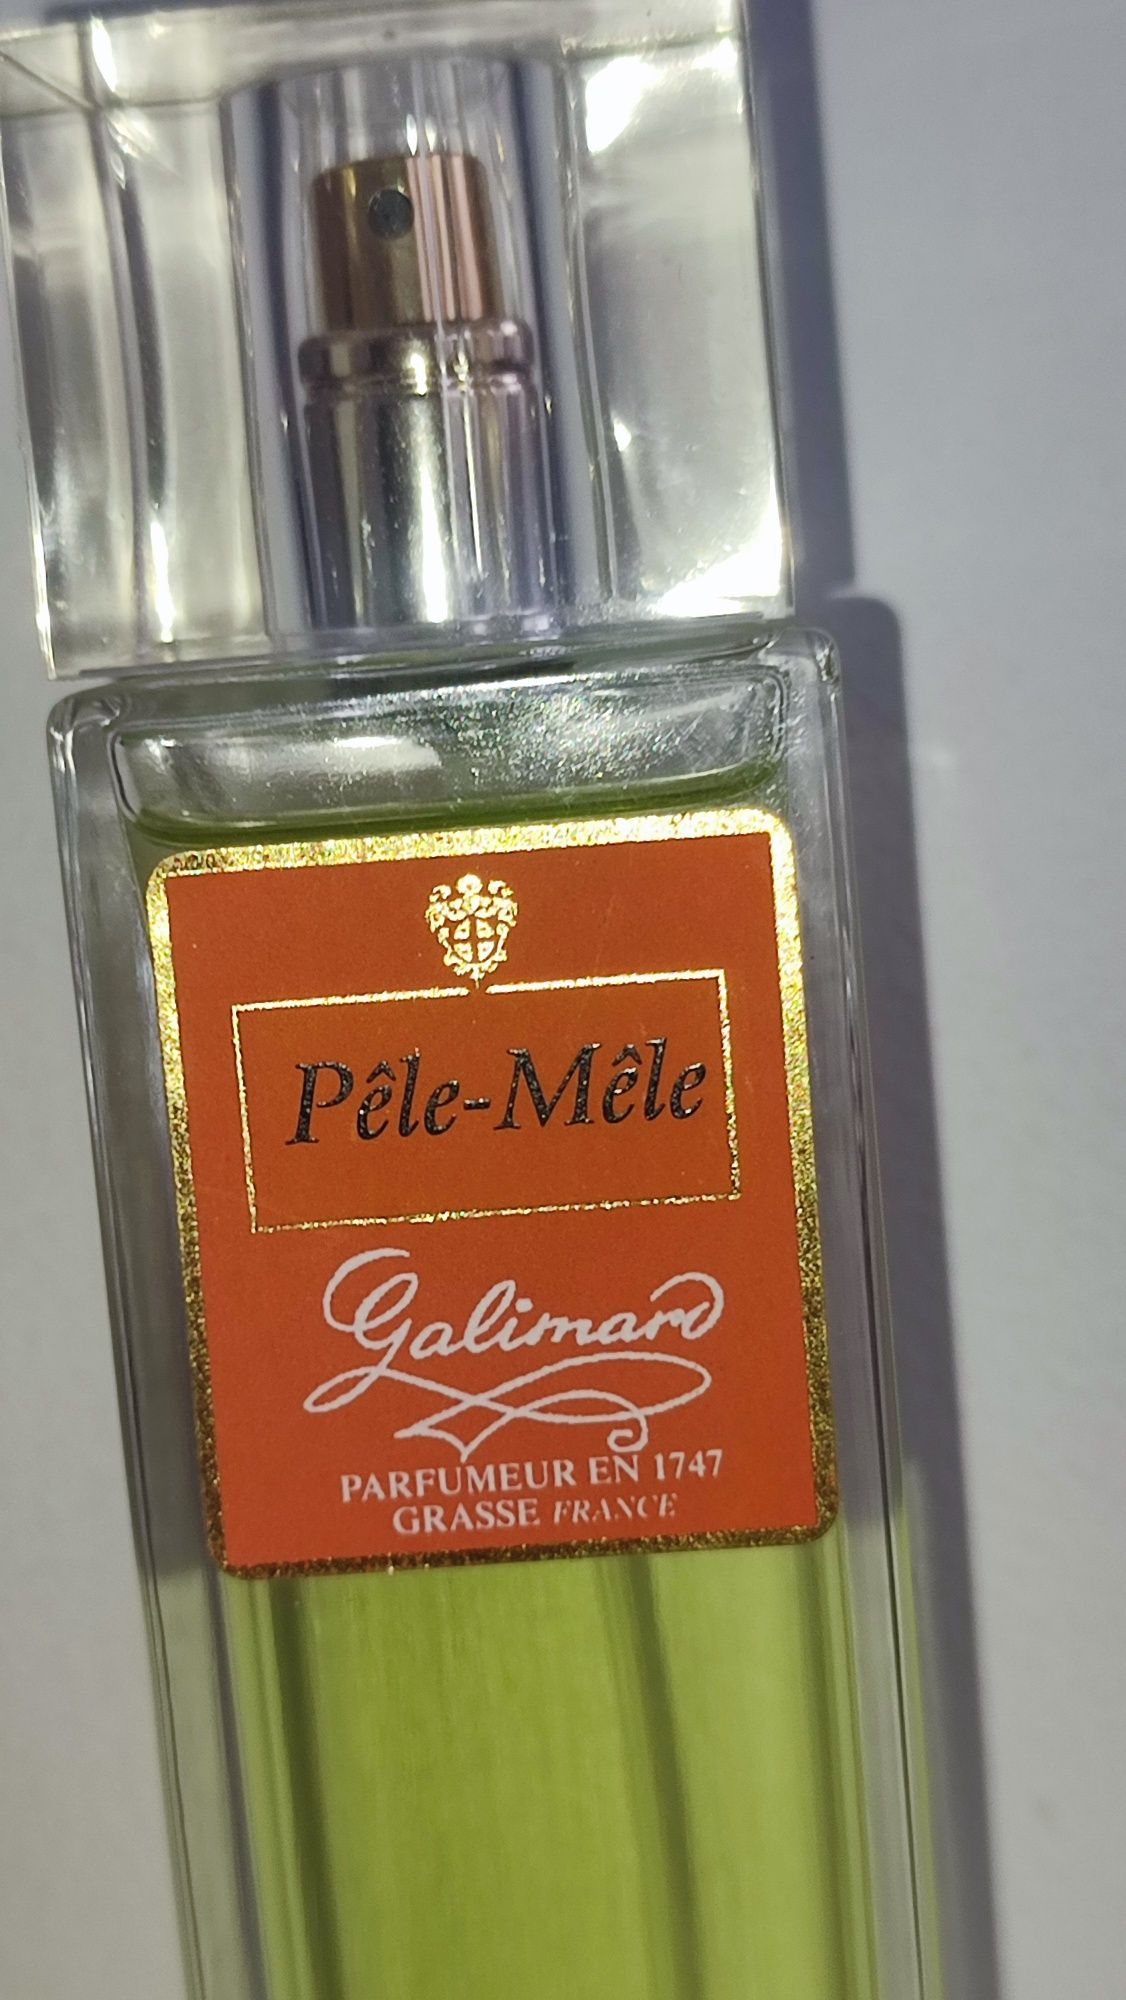 pêle-mèle galimard parfumeur en grasse 100 ml 

Galimar

PARFUMEUR EN